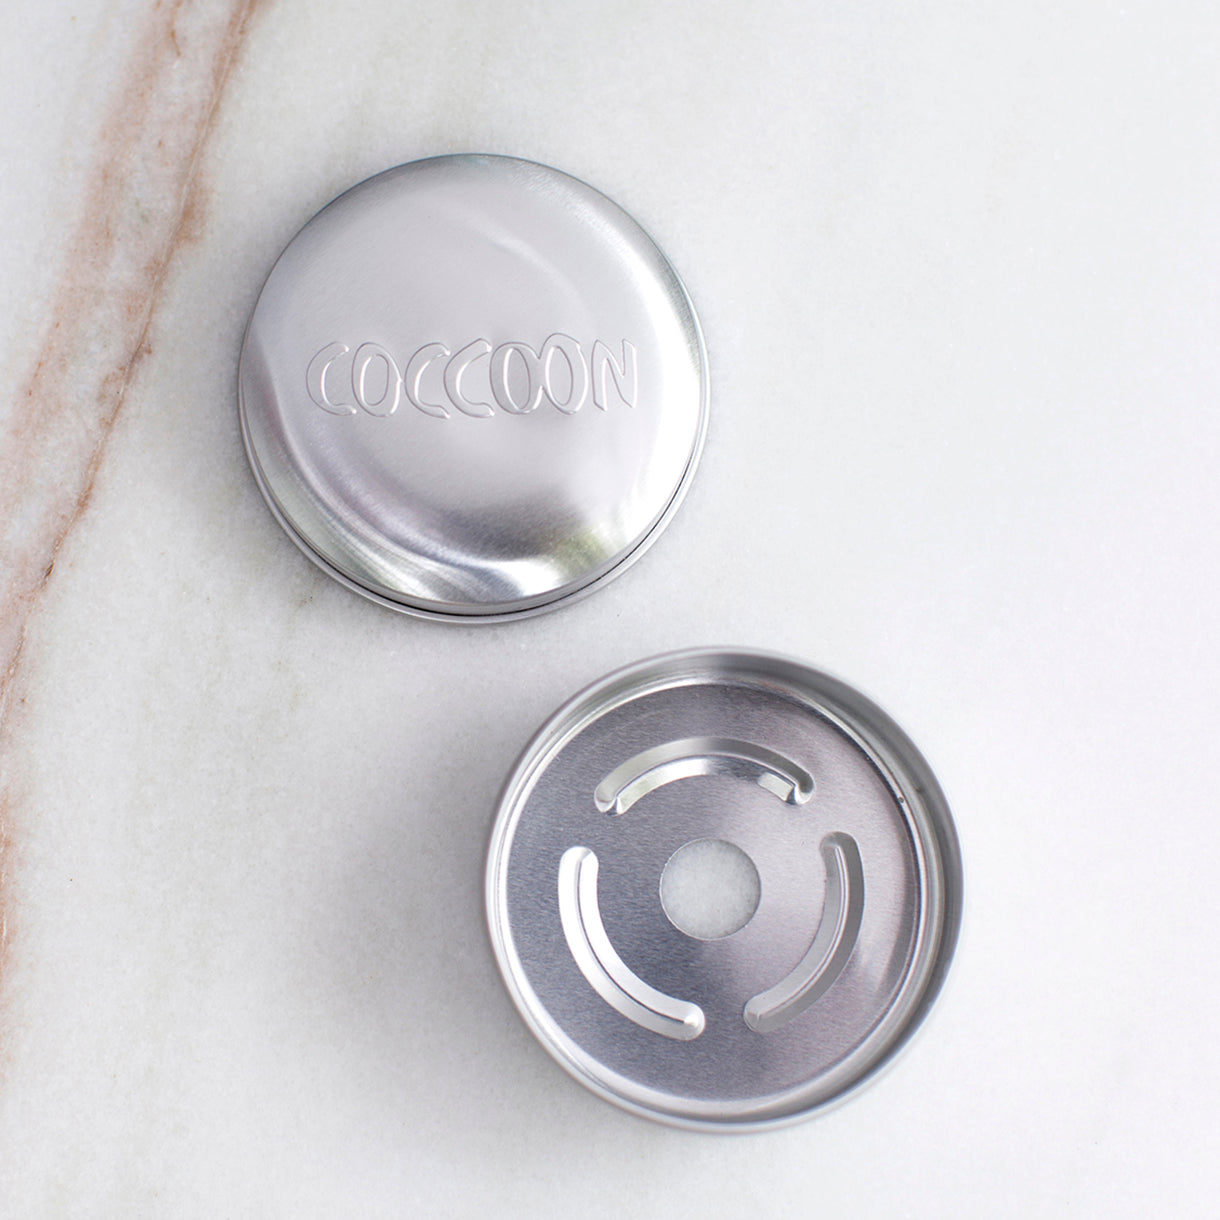 Portasolidi Coccoon in alluminio aperto